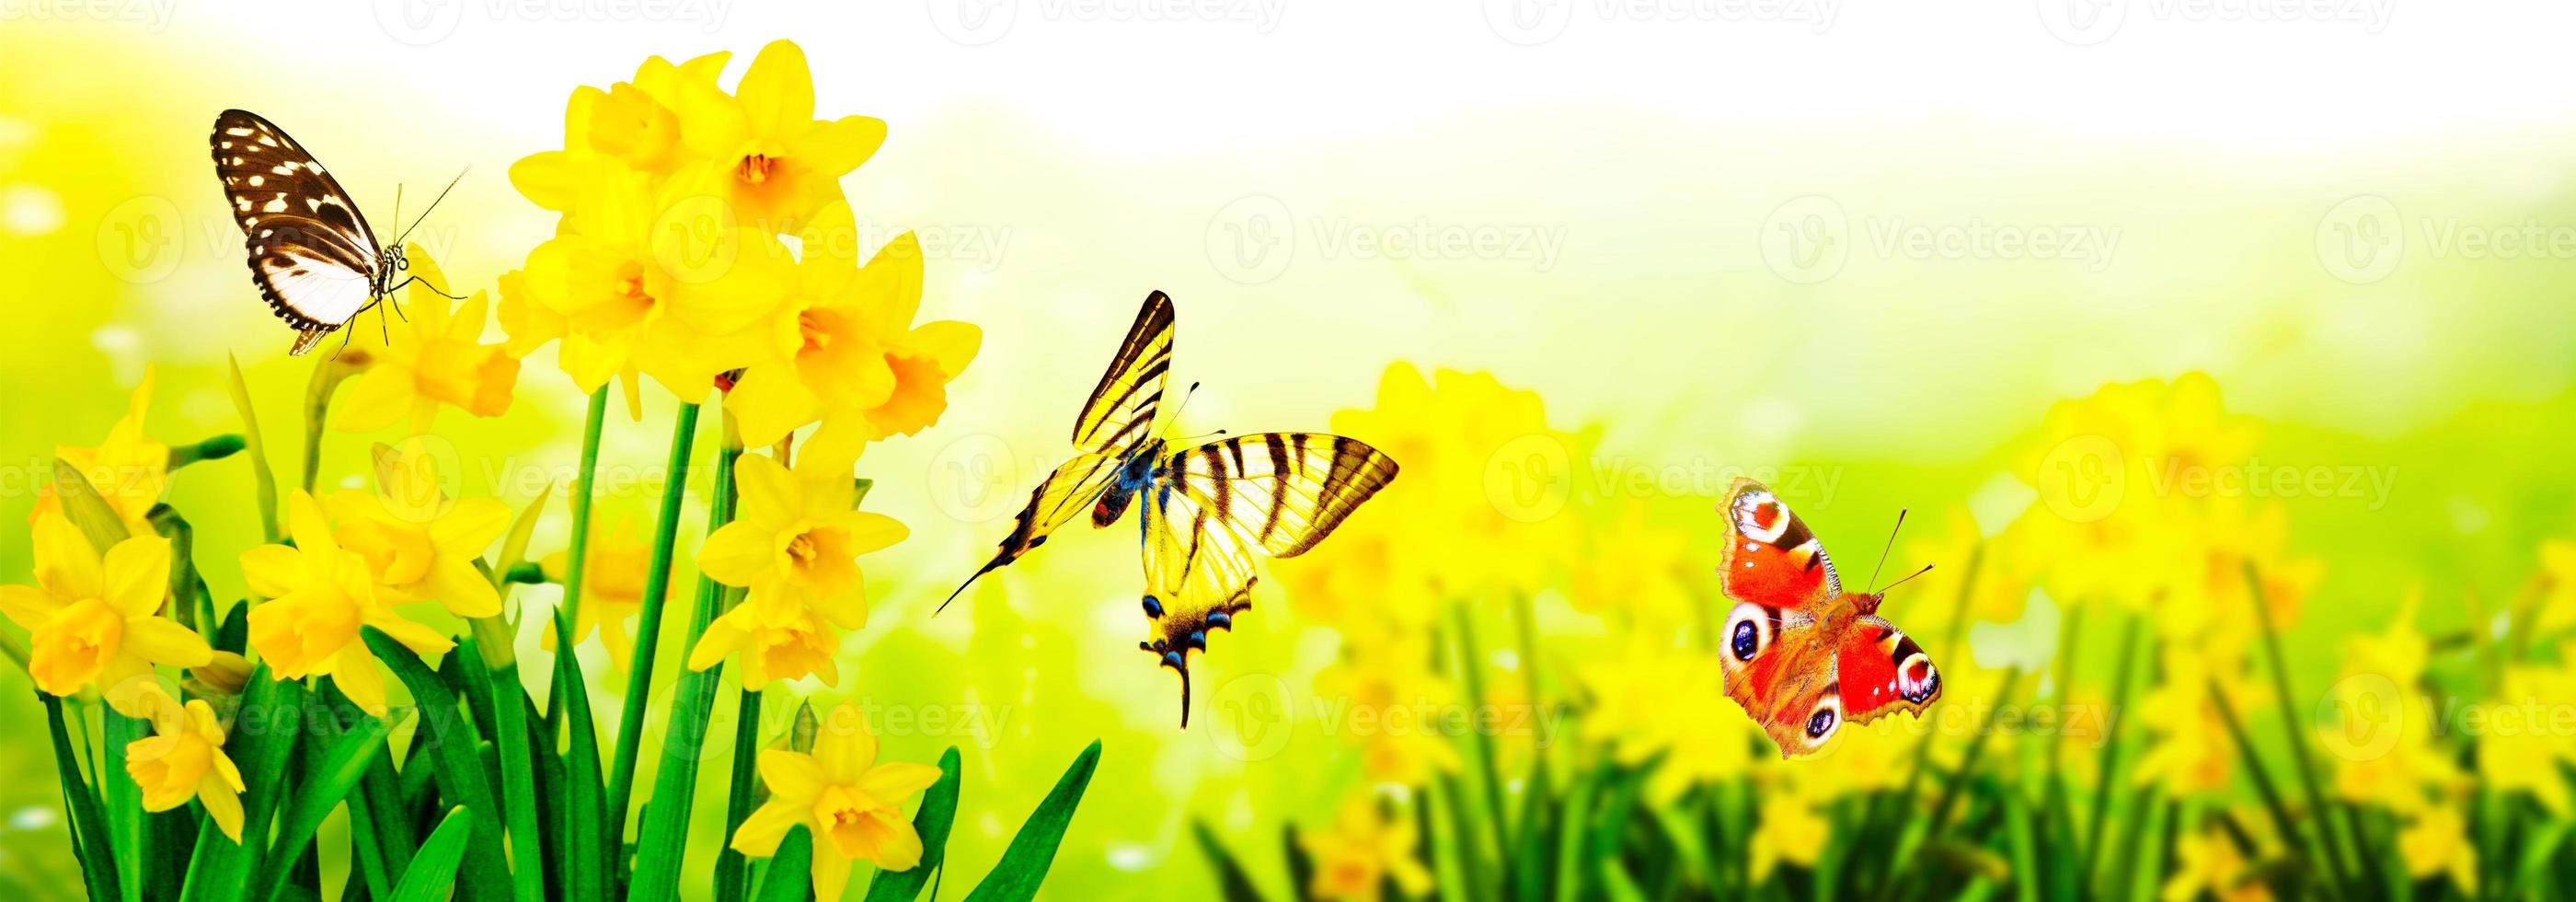 narcisos amarillos y mariposas en el jardín foto